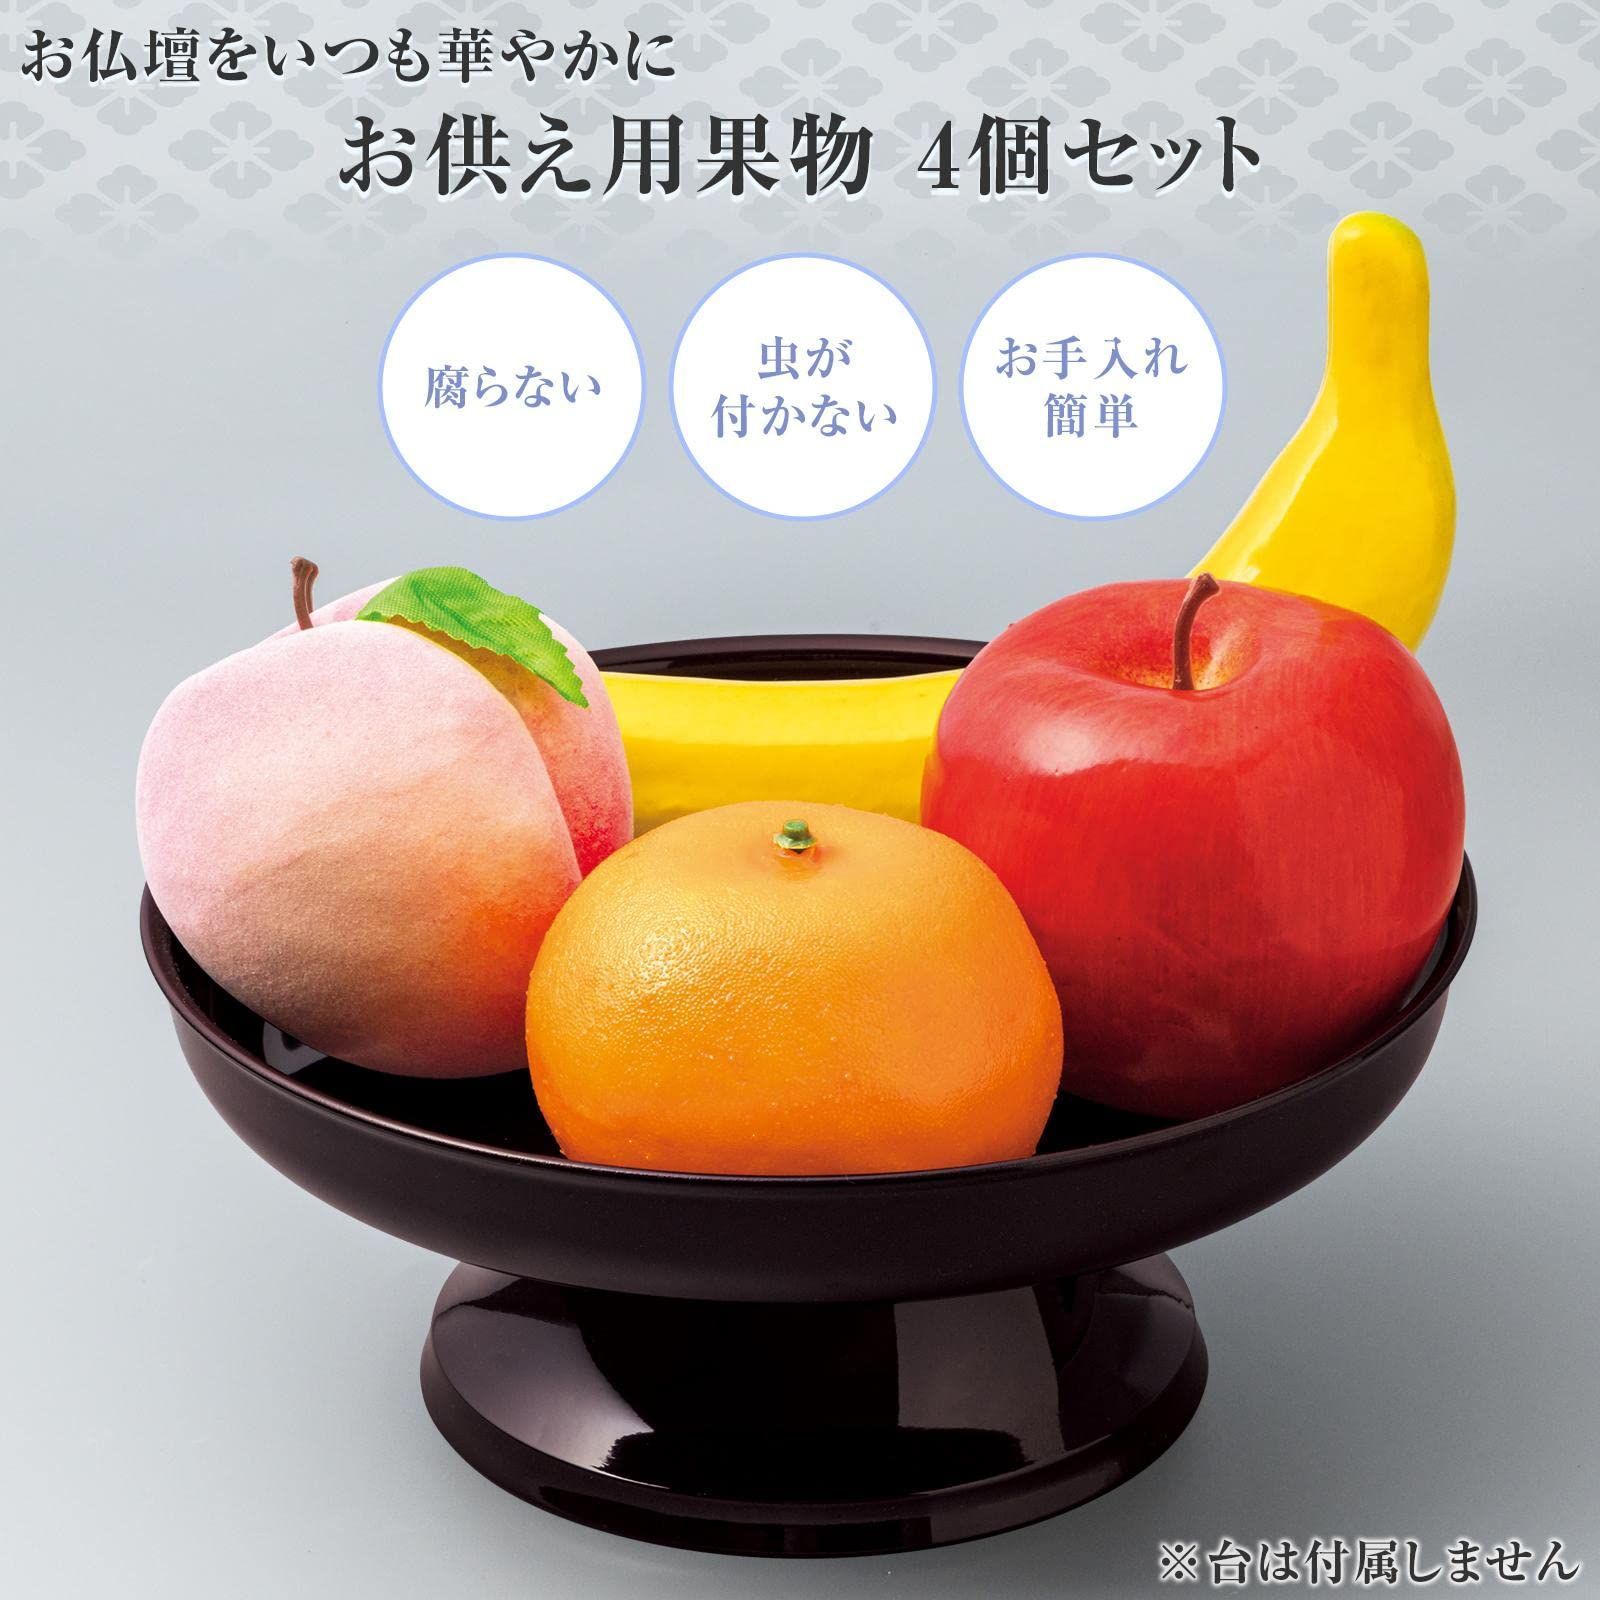 数量限定】コモライフ お供え用果物 4個セット (リンゴ・バナナ